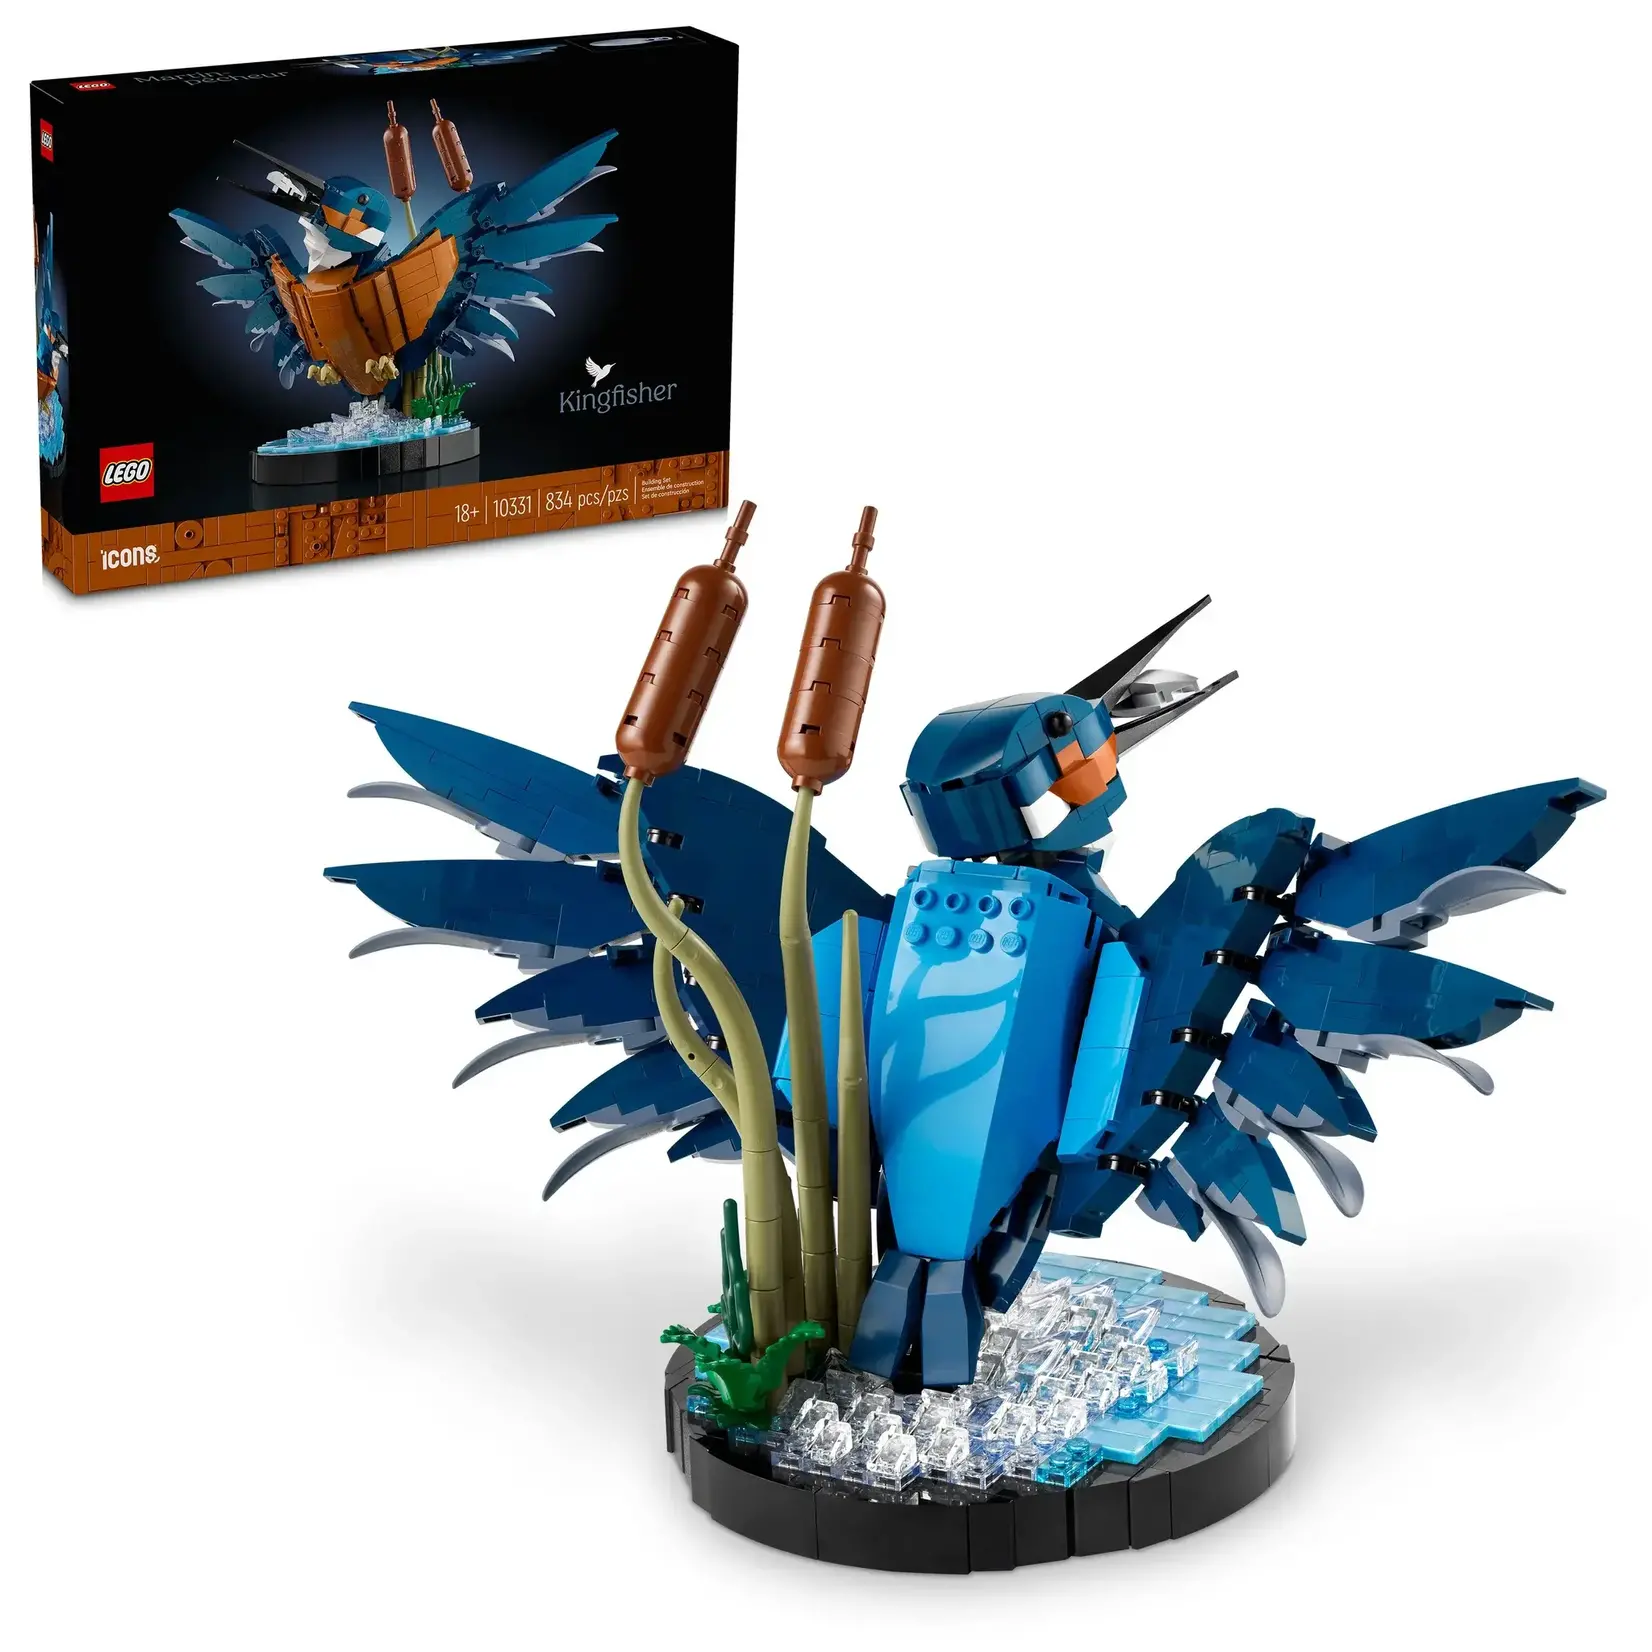 LEGO 10331 LEGO® Icons Kingfisher Bird